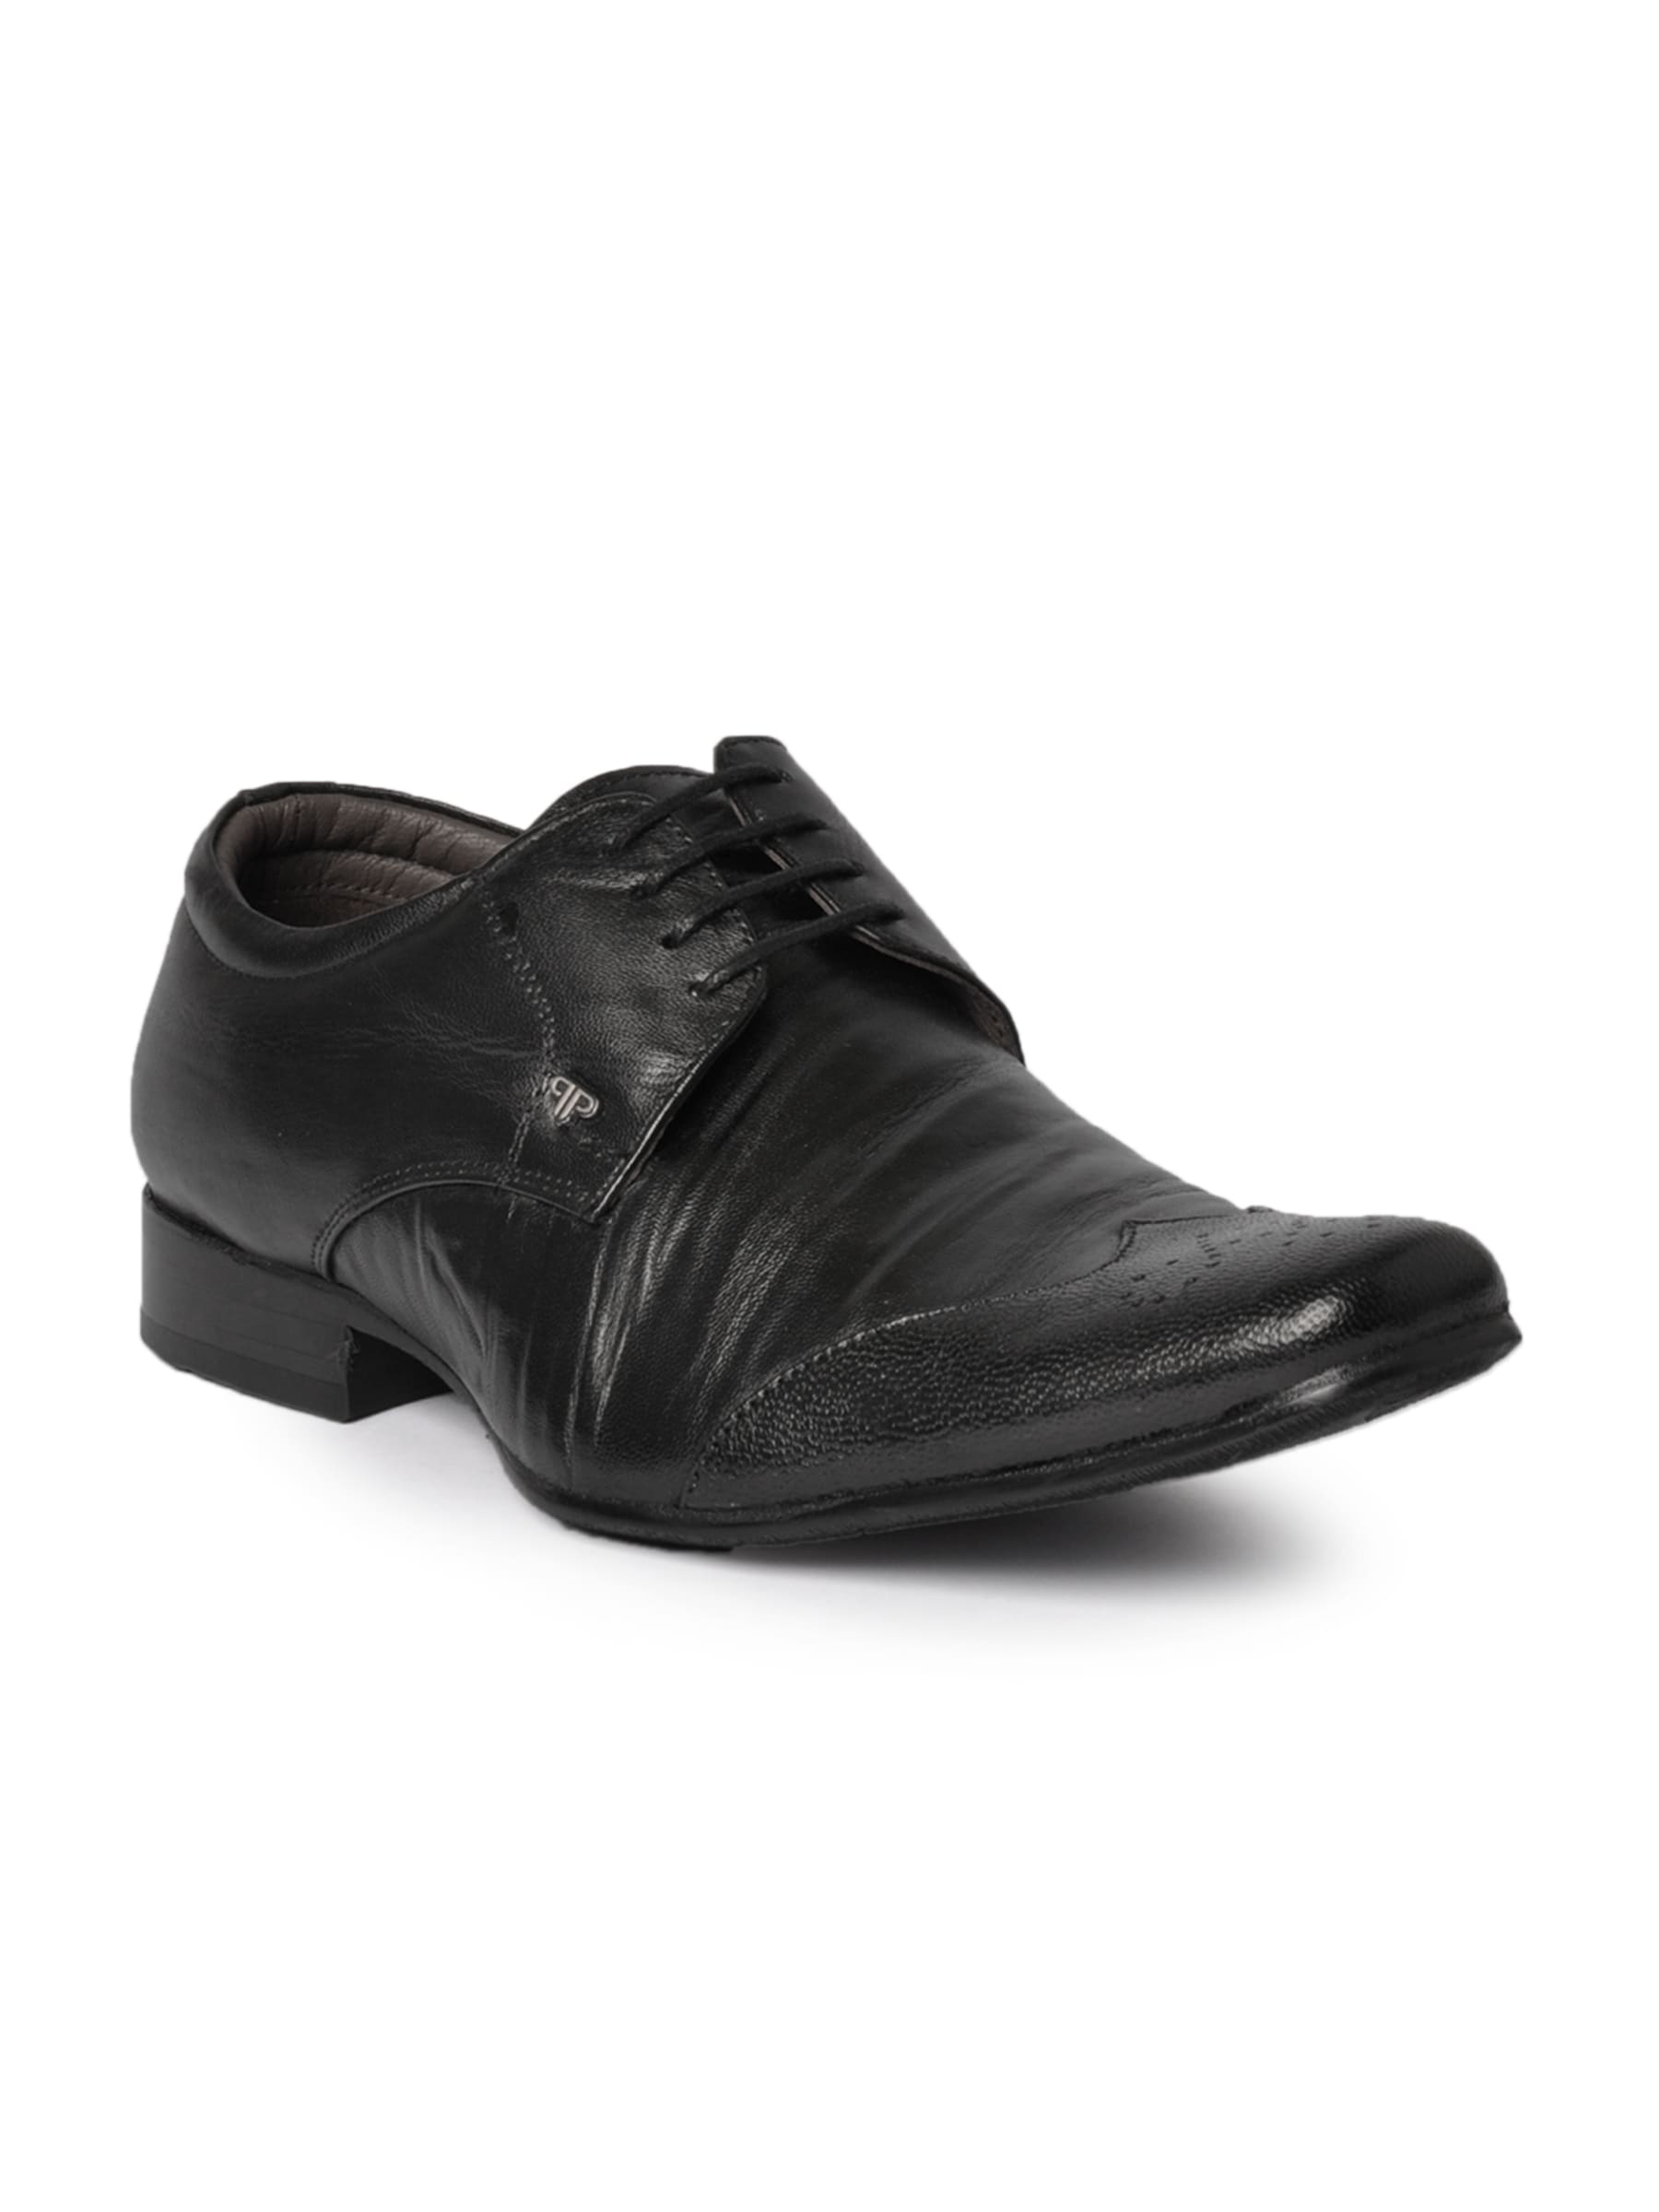 Provogue Men Formal Black Formal Shoes